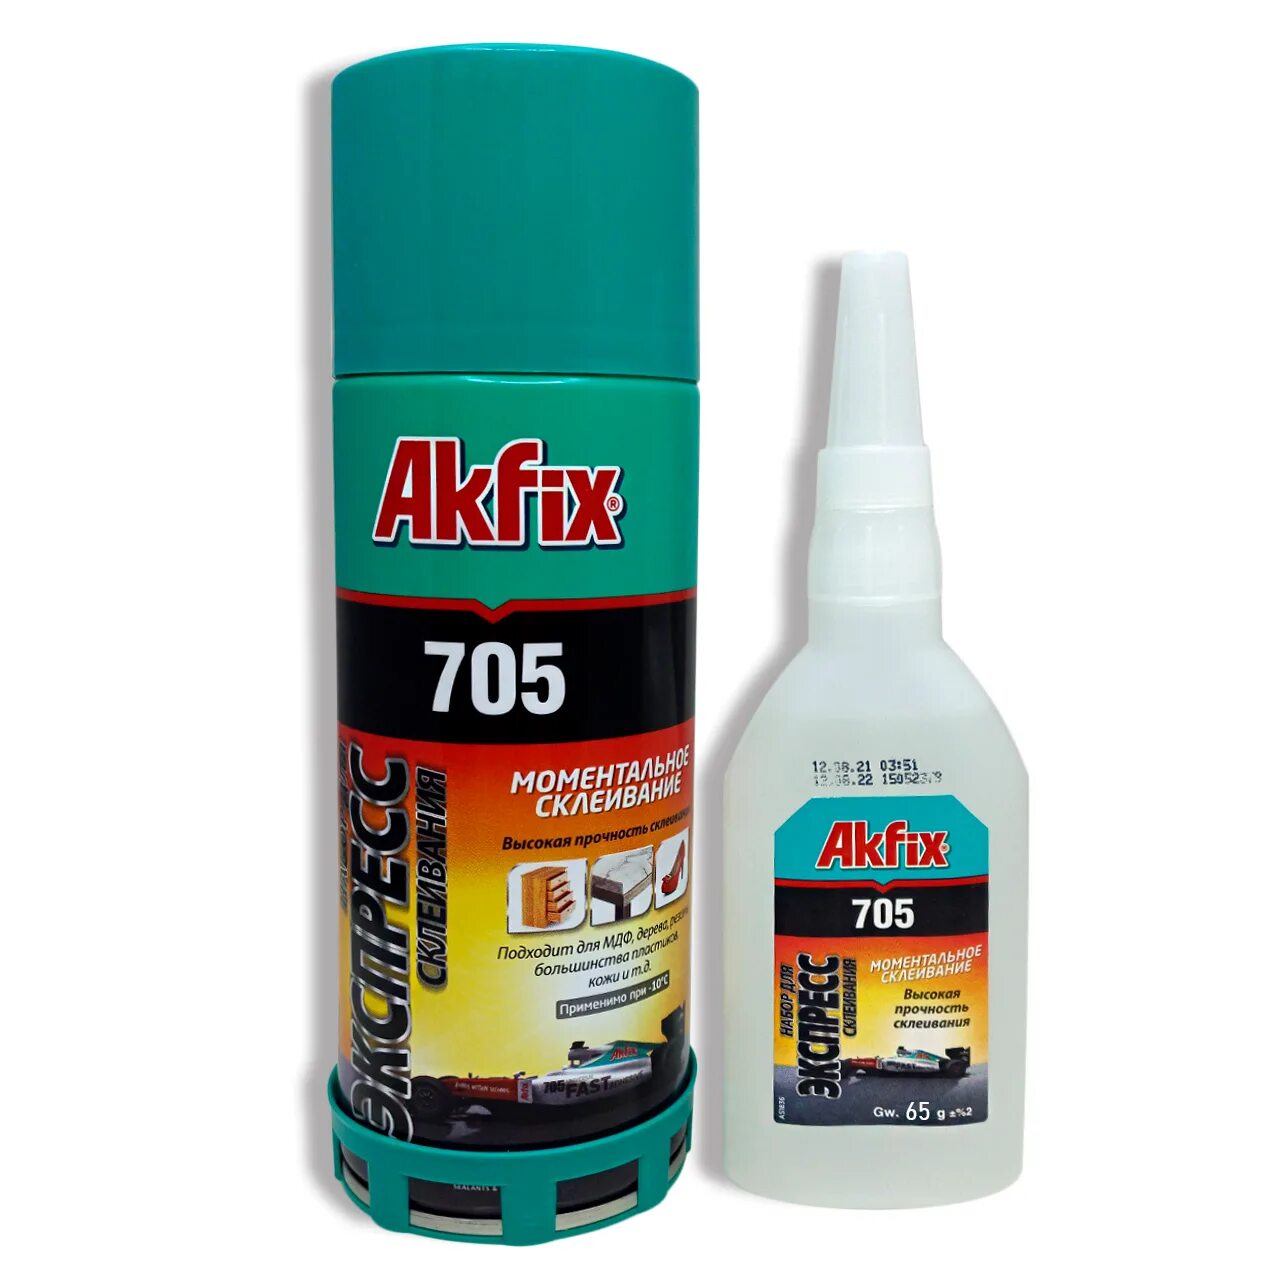 Akfix клей для экспресс склеивания. Клей двухкомпонентный Akfix 705. Akfix 705 125гр. Клей Akfix 705 65гр. Akfix набор 705.